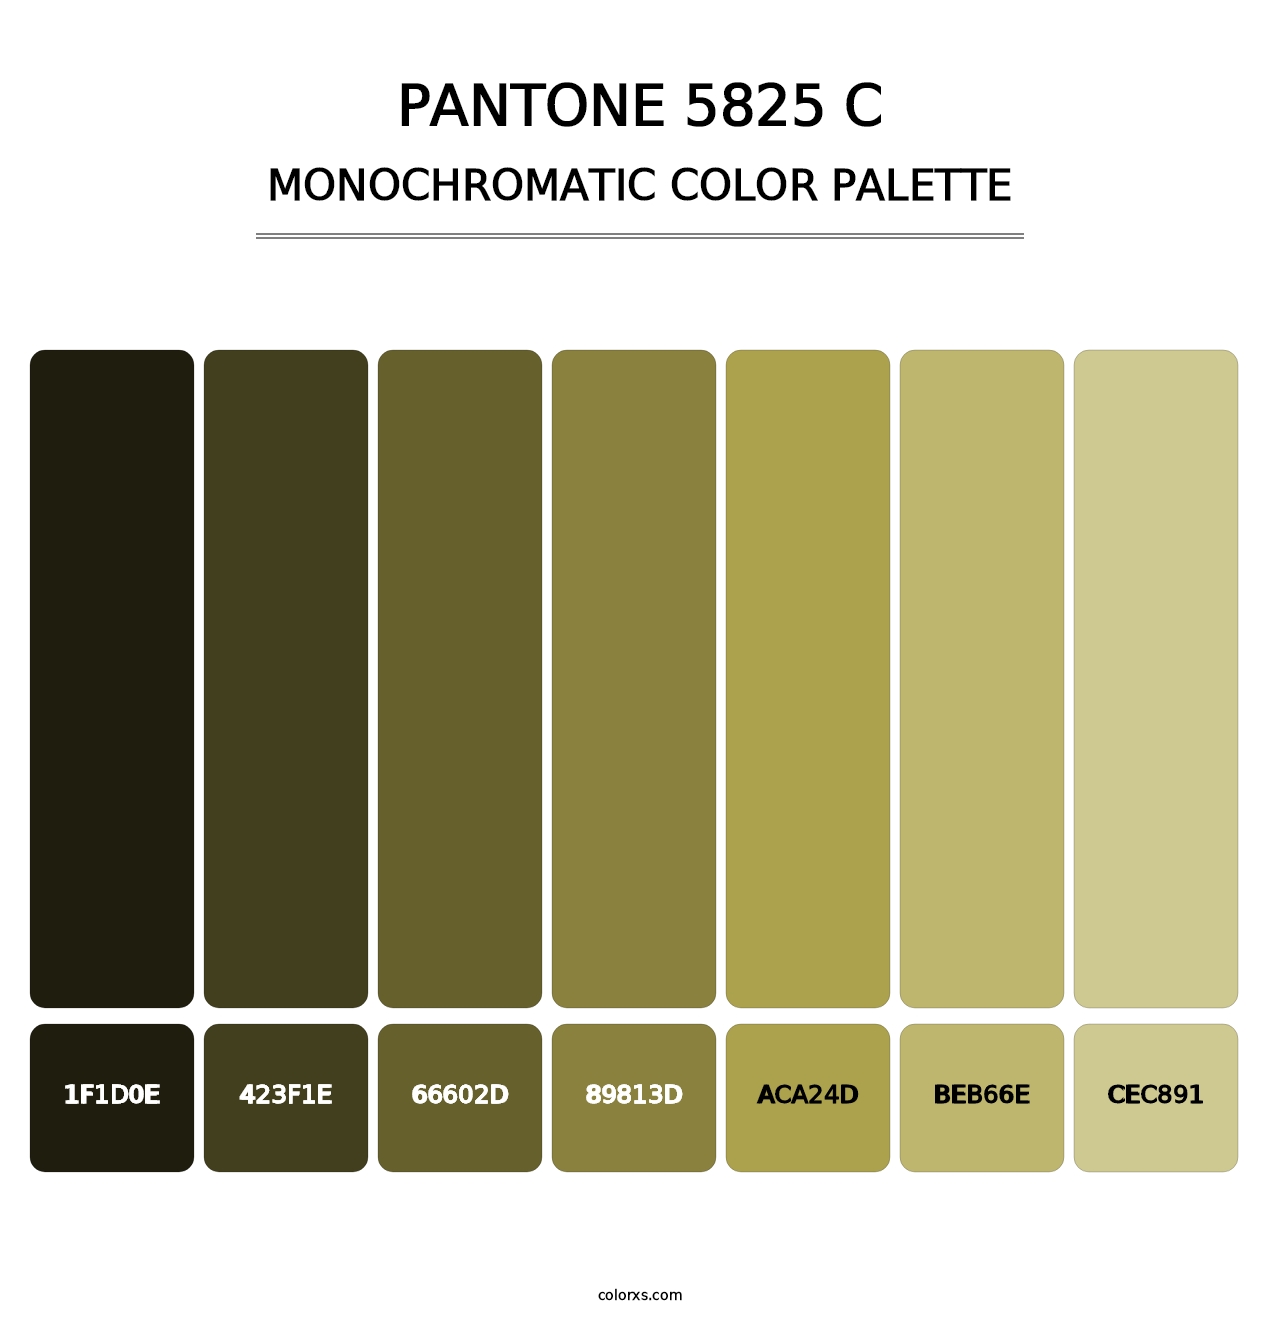 PANTONE 5825 C - Monochromatic Color Palette